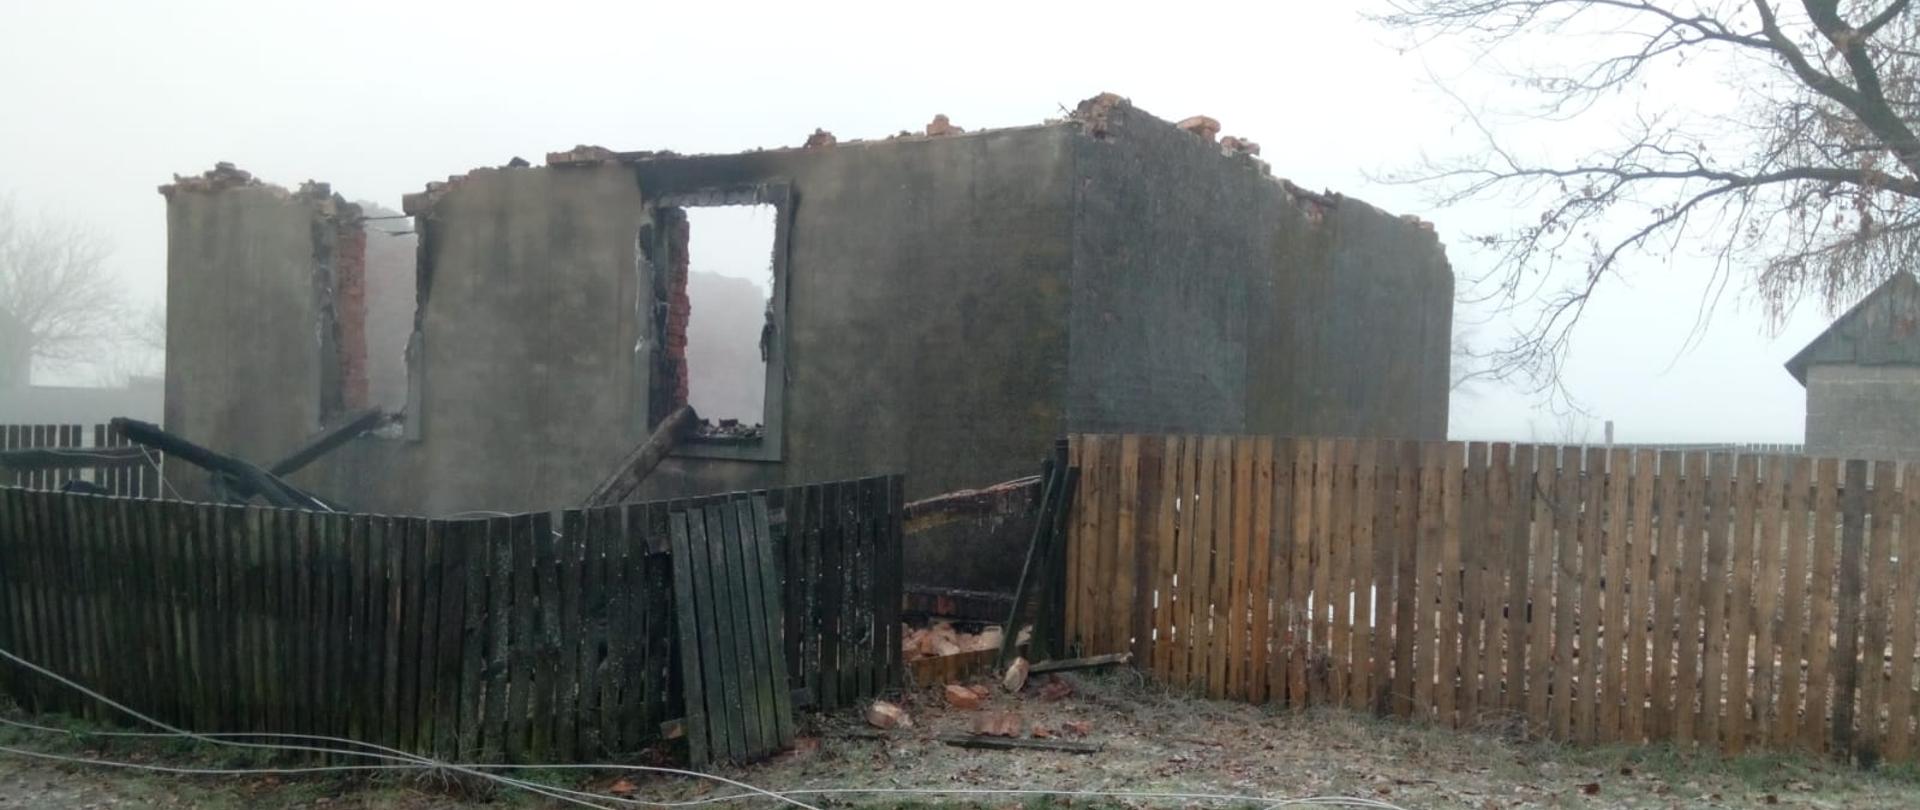 Zdjęcie przedstawia zniszczony przez wybuch i pożar budynek mieszkalny. W wyniku zdarzenia zostały jedynie trzy ściany zewnętrzne.